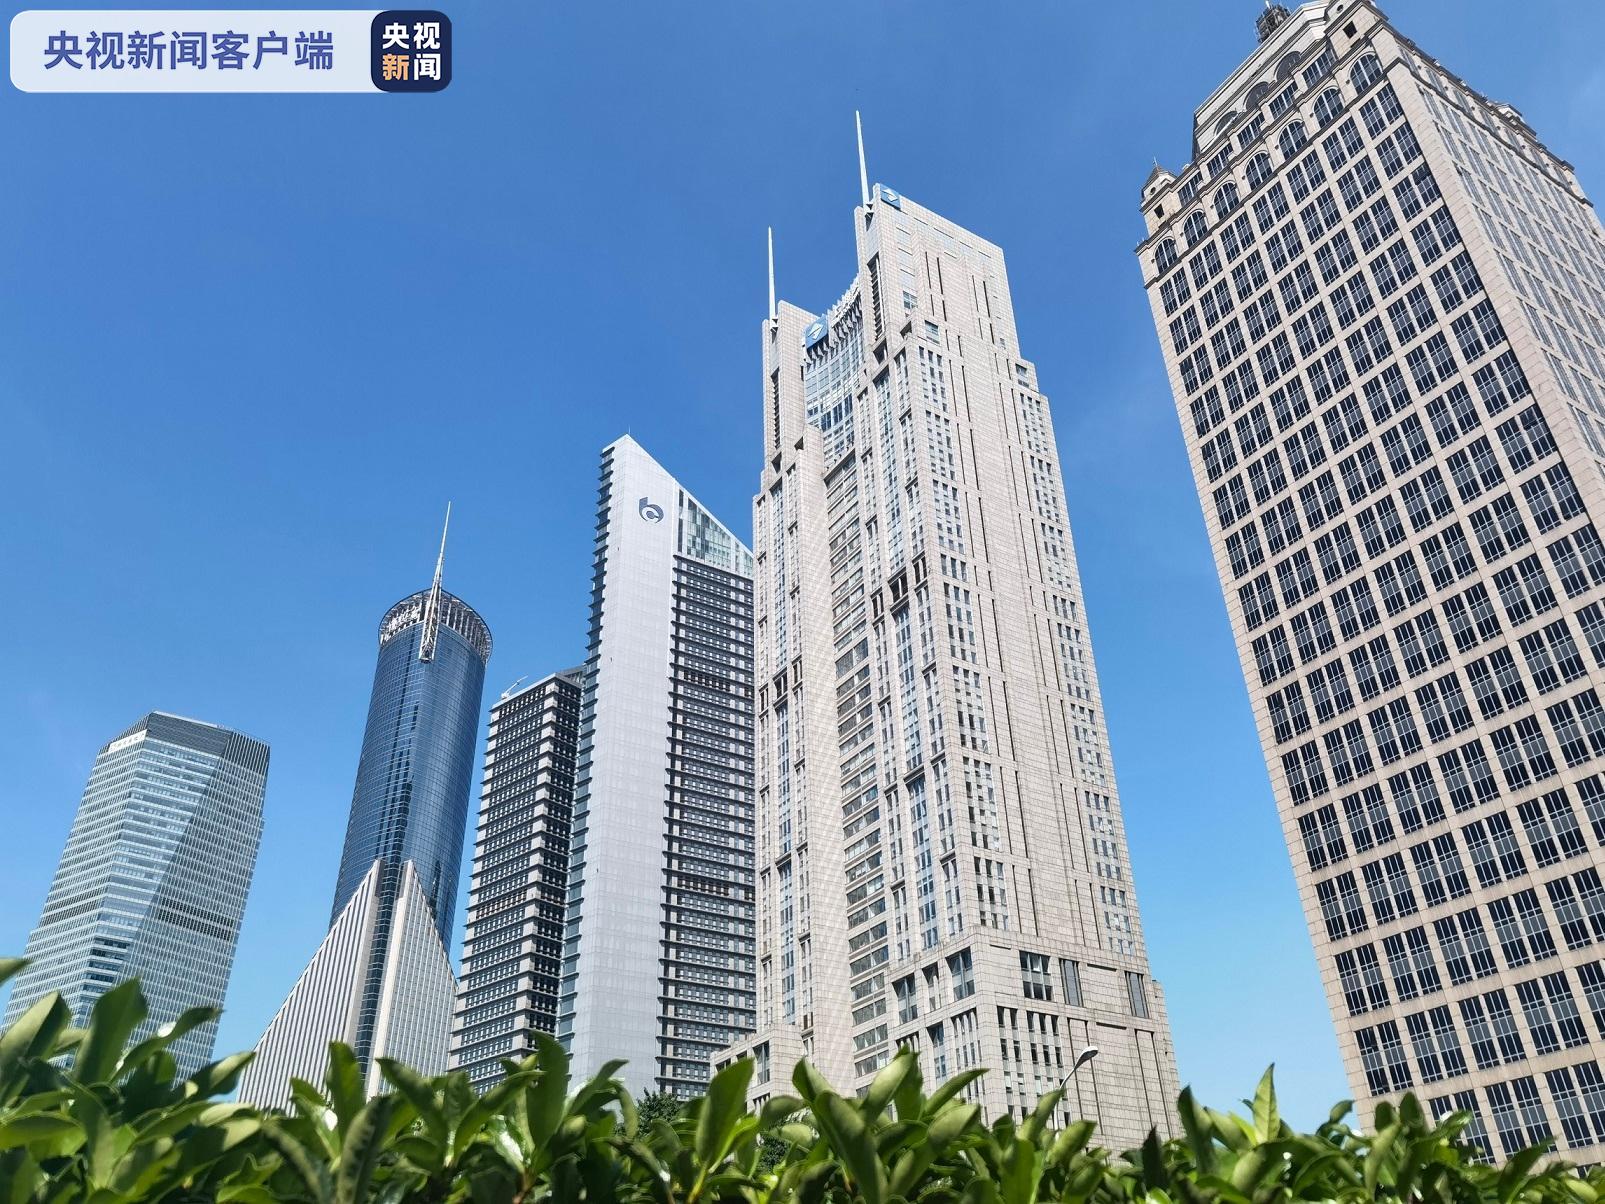 整顿挂牌价格虚高 上海规范二手房市场秩序